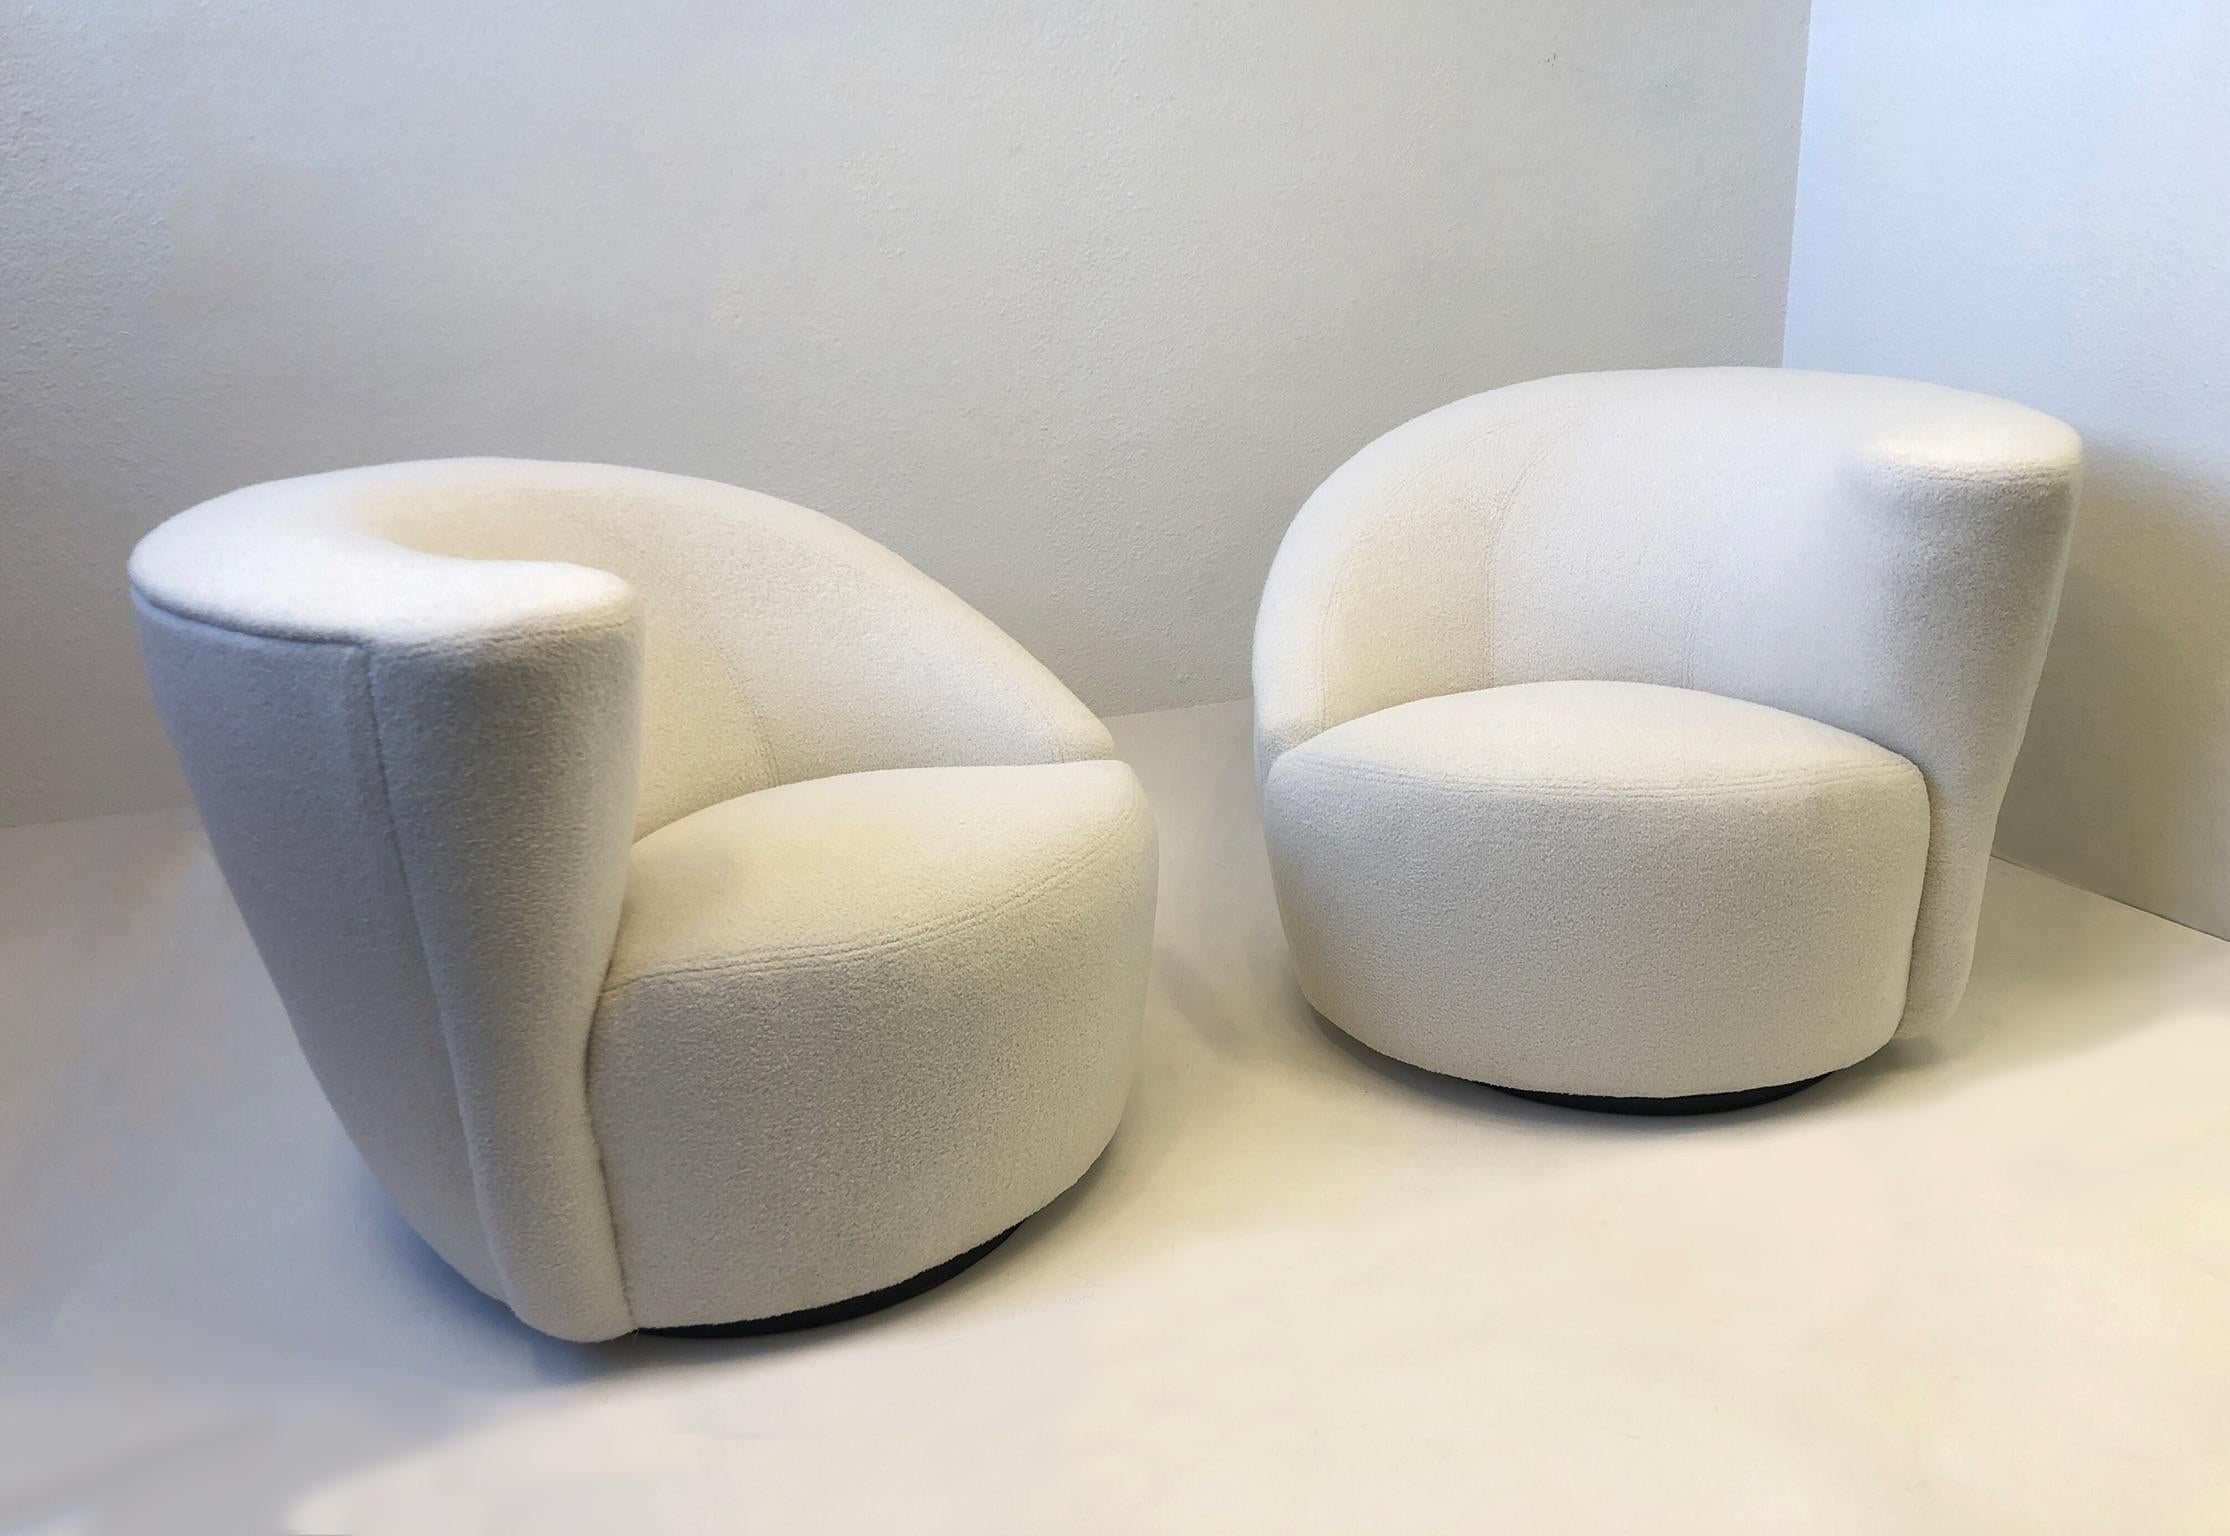 1990er Jahre Ein Paar 'Corkscrew'-Lounge-Sessel und -Ottomanen, entworfen von Vladimir Kagan für Directional.
Neu bezogen mit einem weichen weißen Bouclé-Stoff. Die Stühle drehen sich um 180° und kehren in ihre ursprüngliche Position zurück.